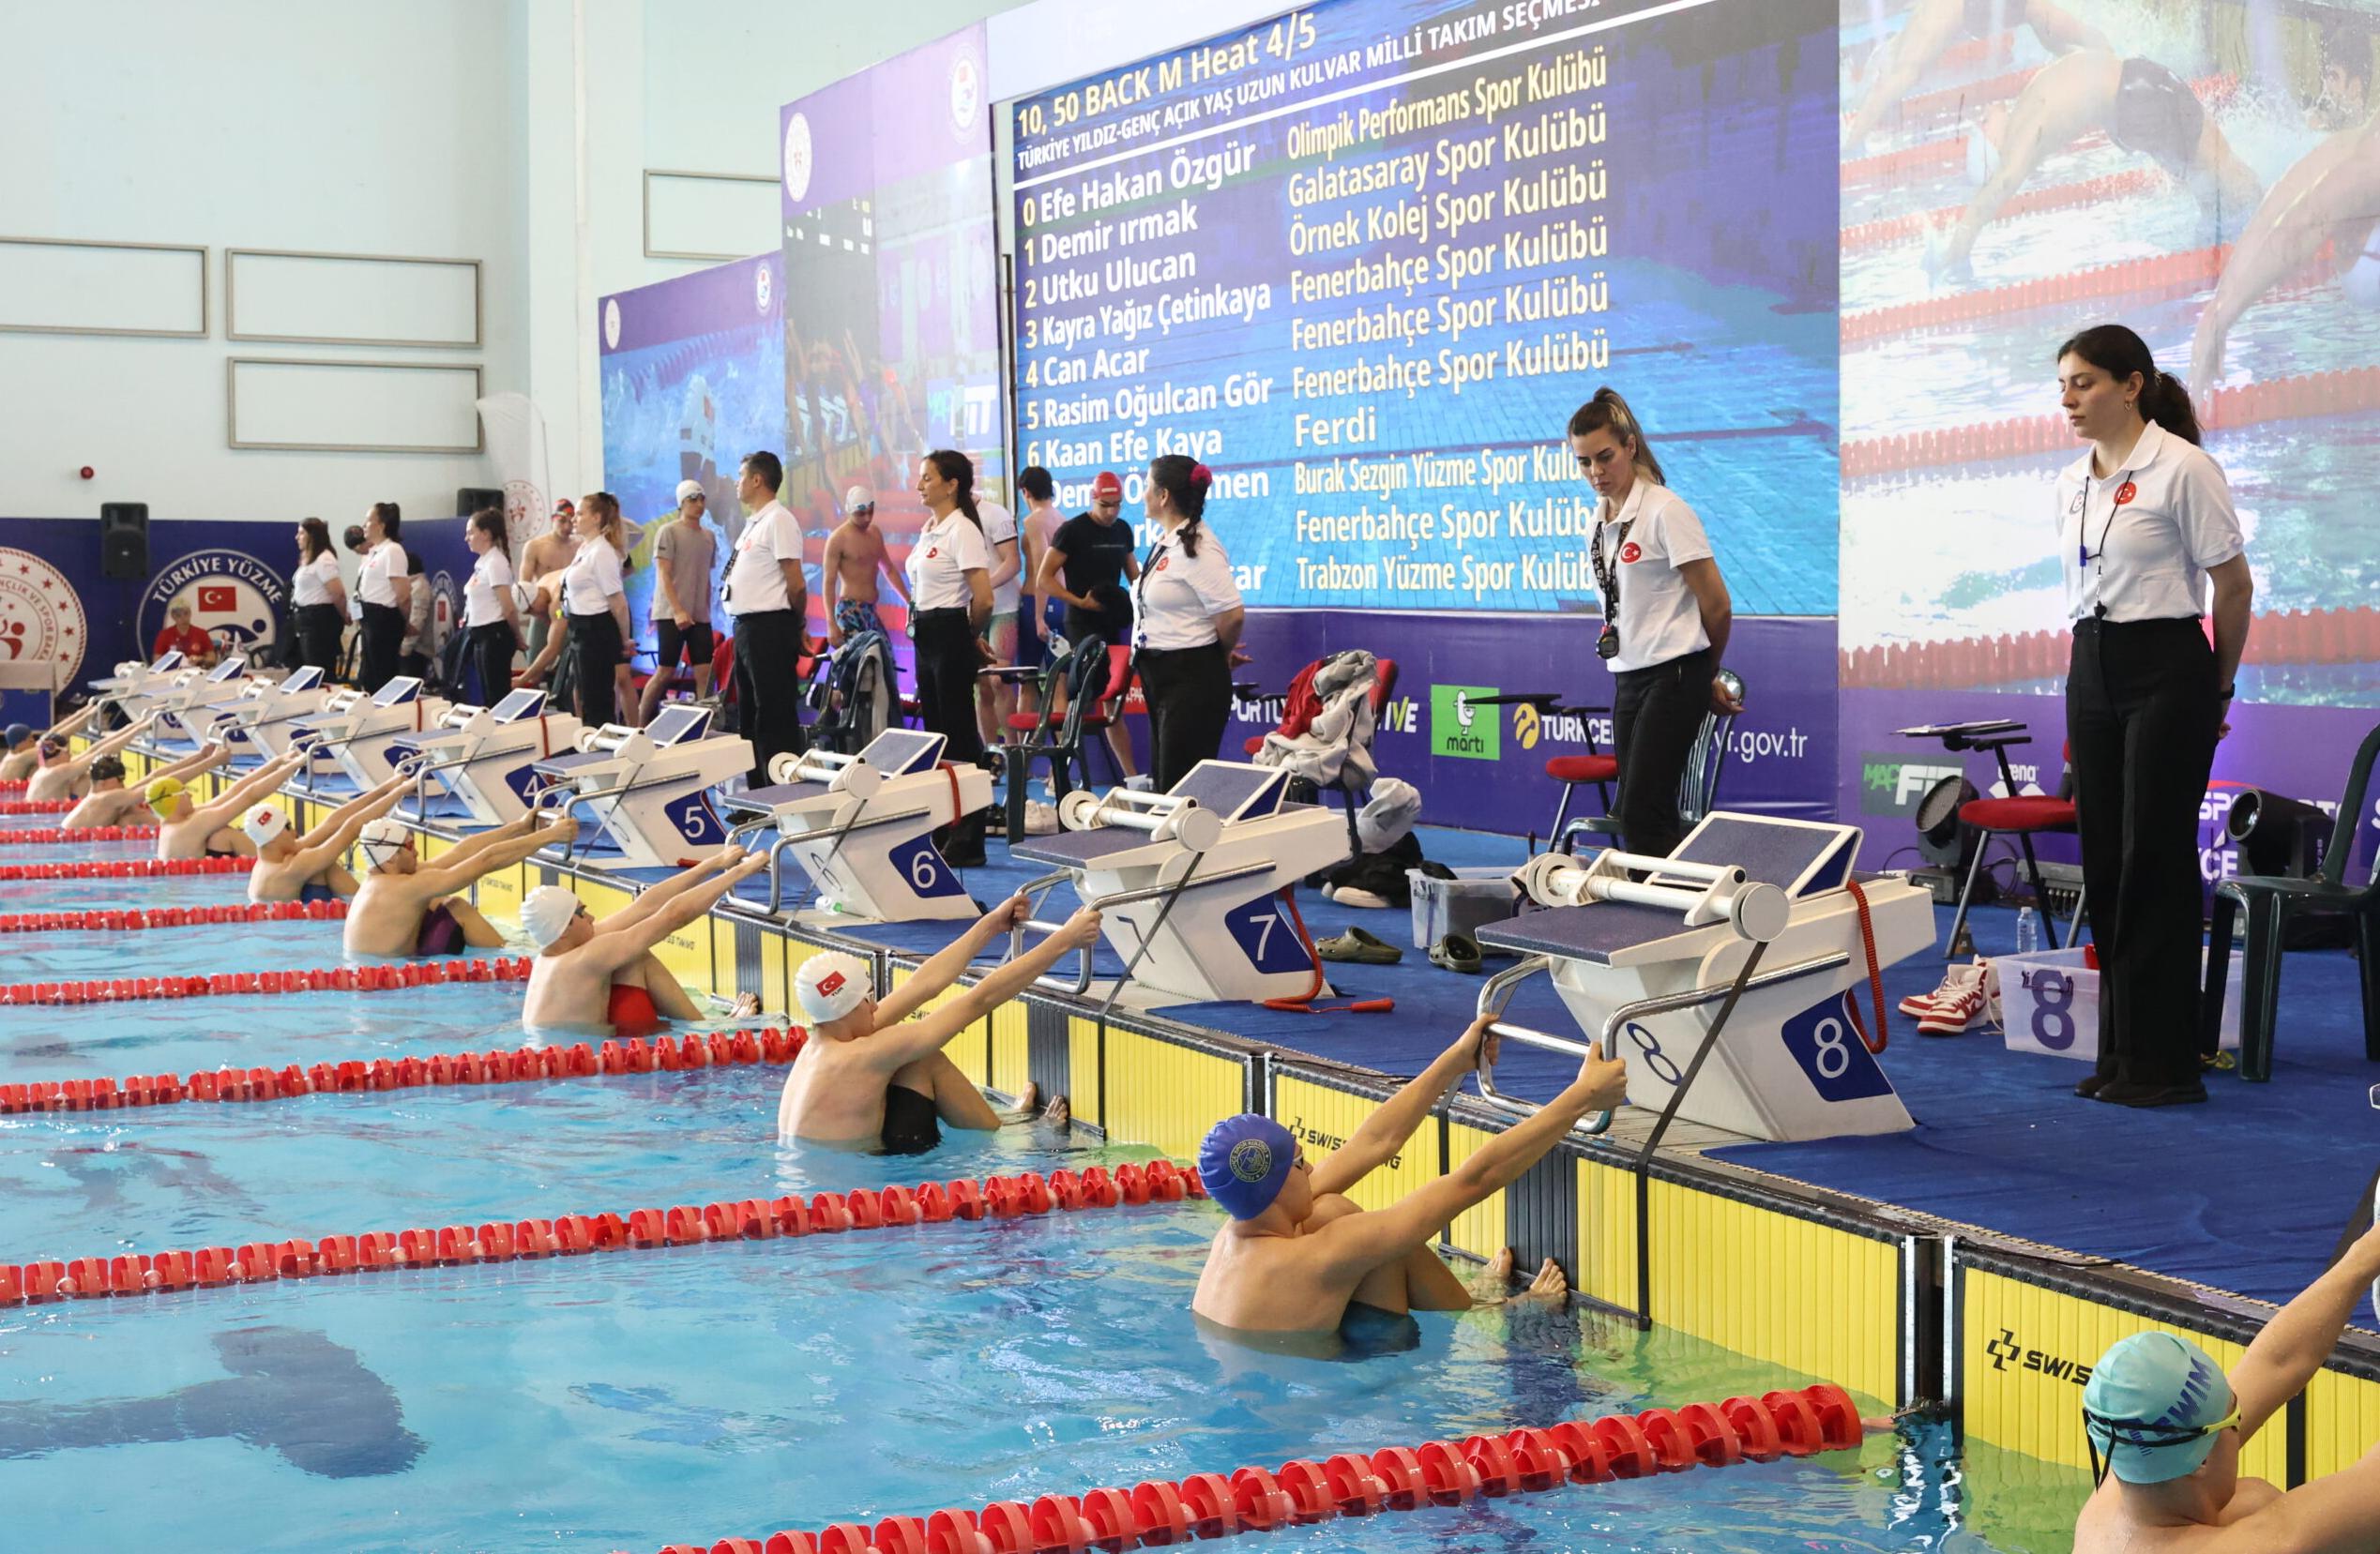 Yüzmede 2 Türkiye rekoru kırıldı